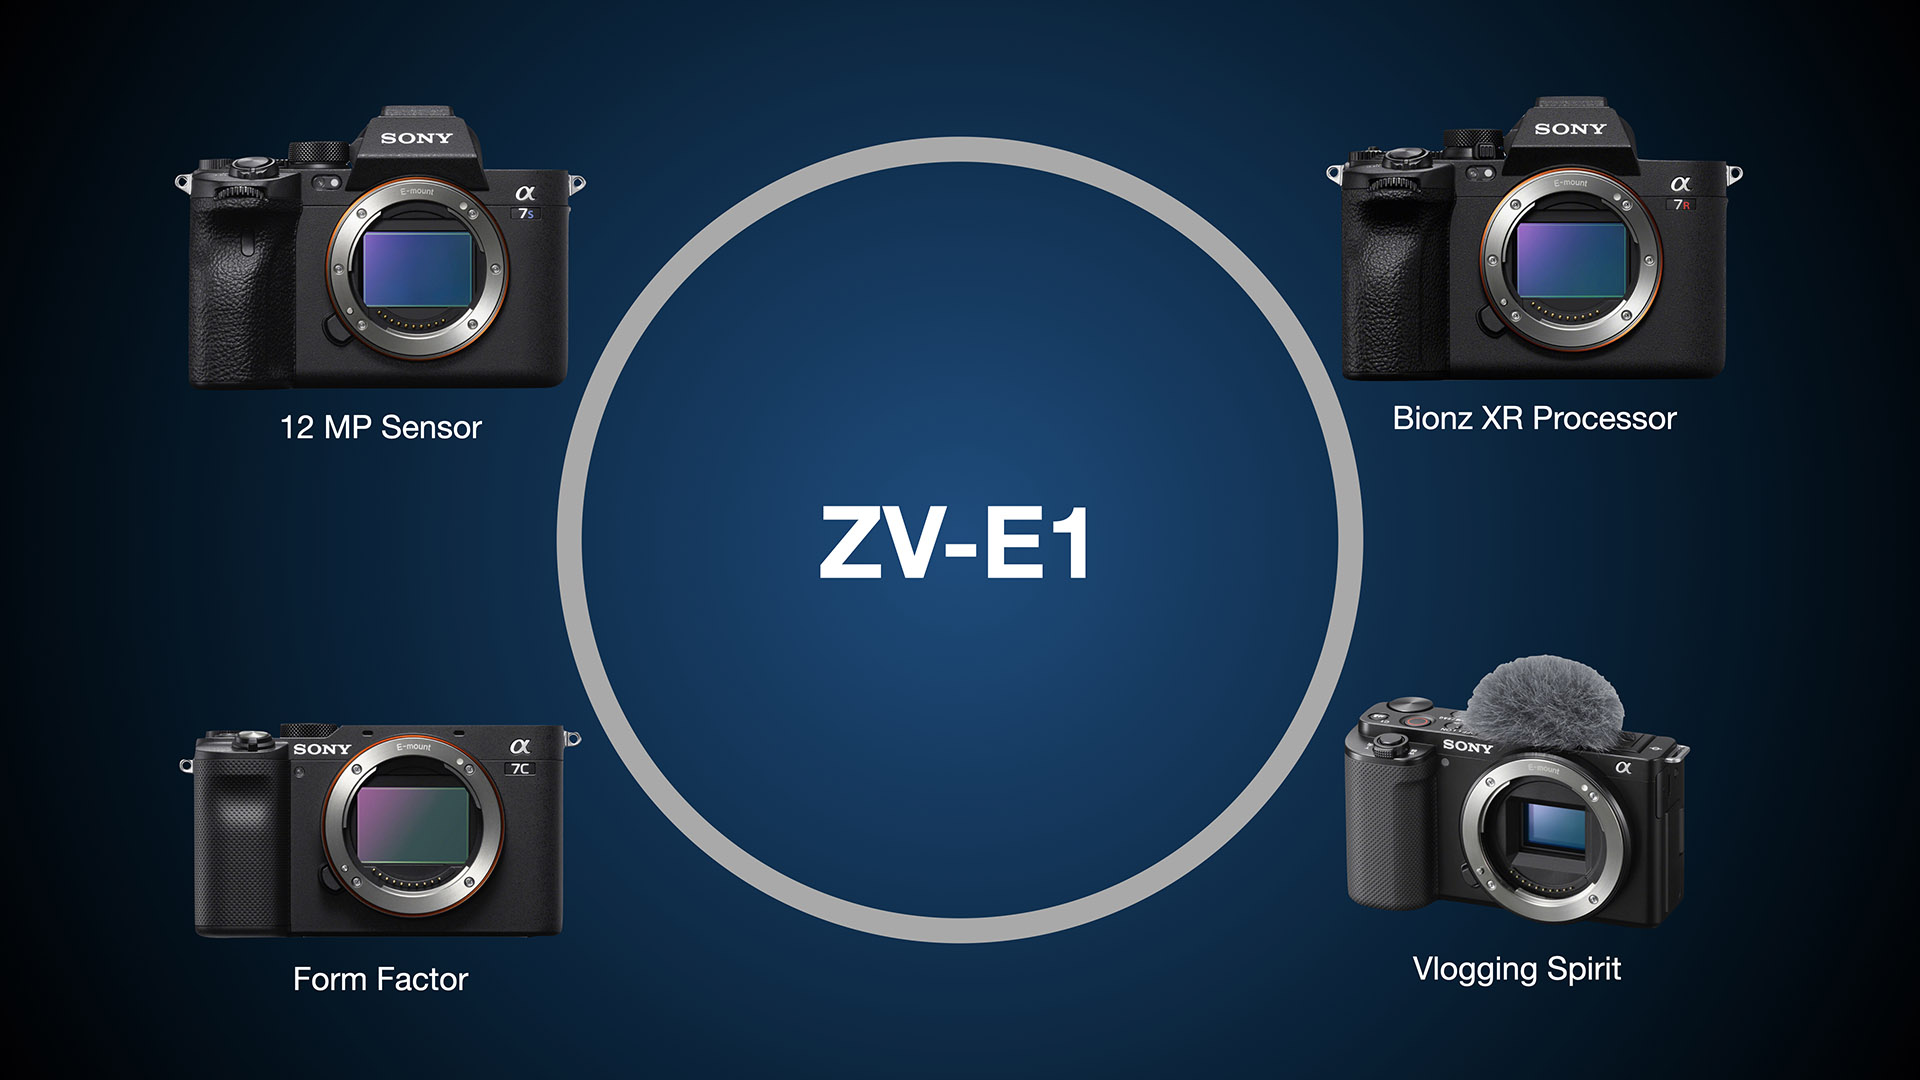 ソニー ZV-E1 レビュー － ソニー a7S IIIの低照度対応、強化されたAF 